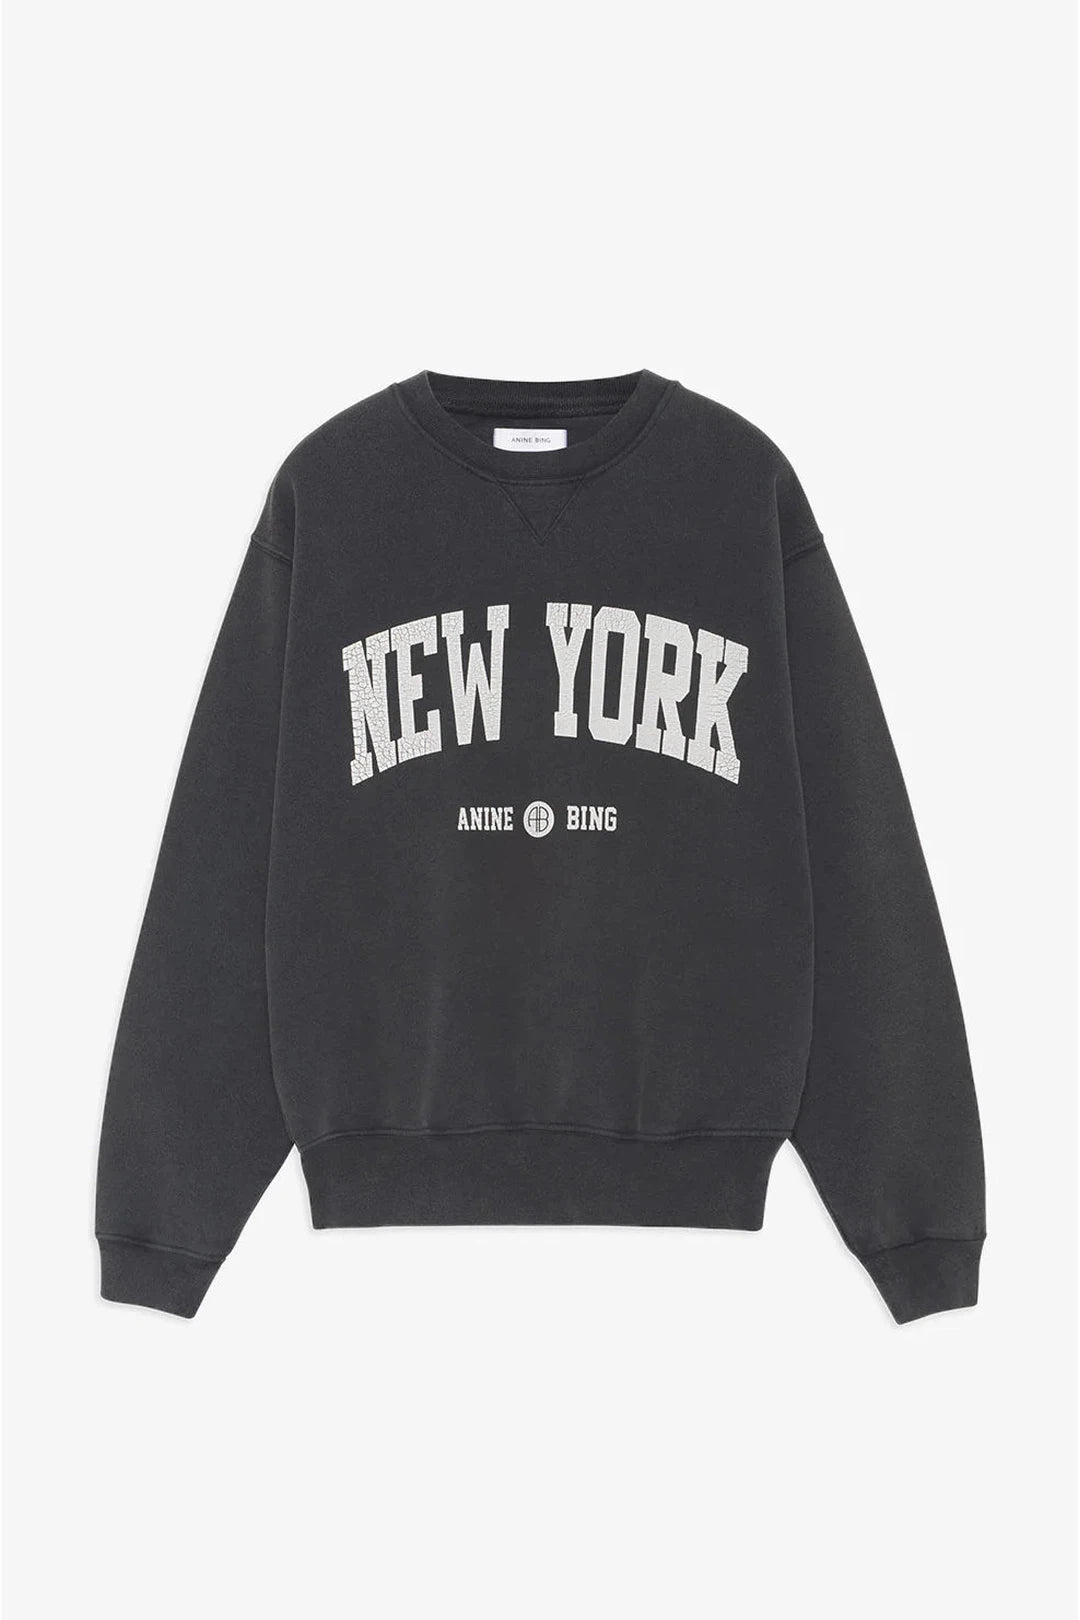 PREORDER Ramona sweatshirt university new york, washed black